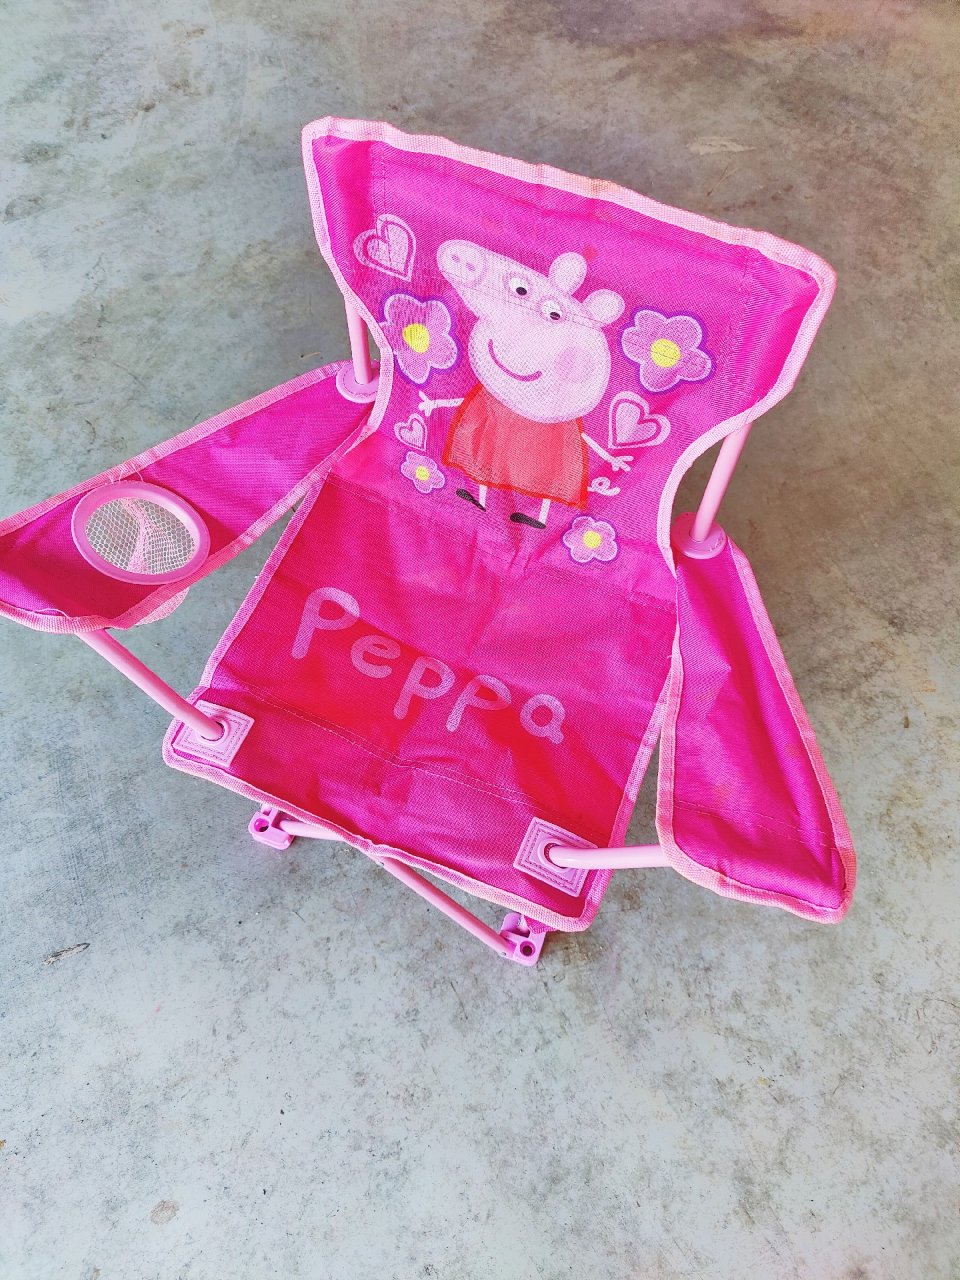 小女孩都喜欢的peppa pig露营椅...